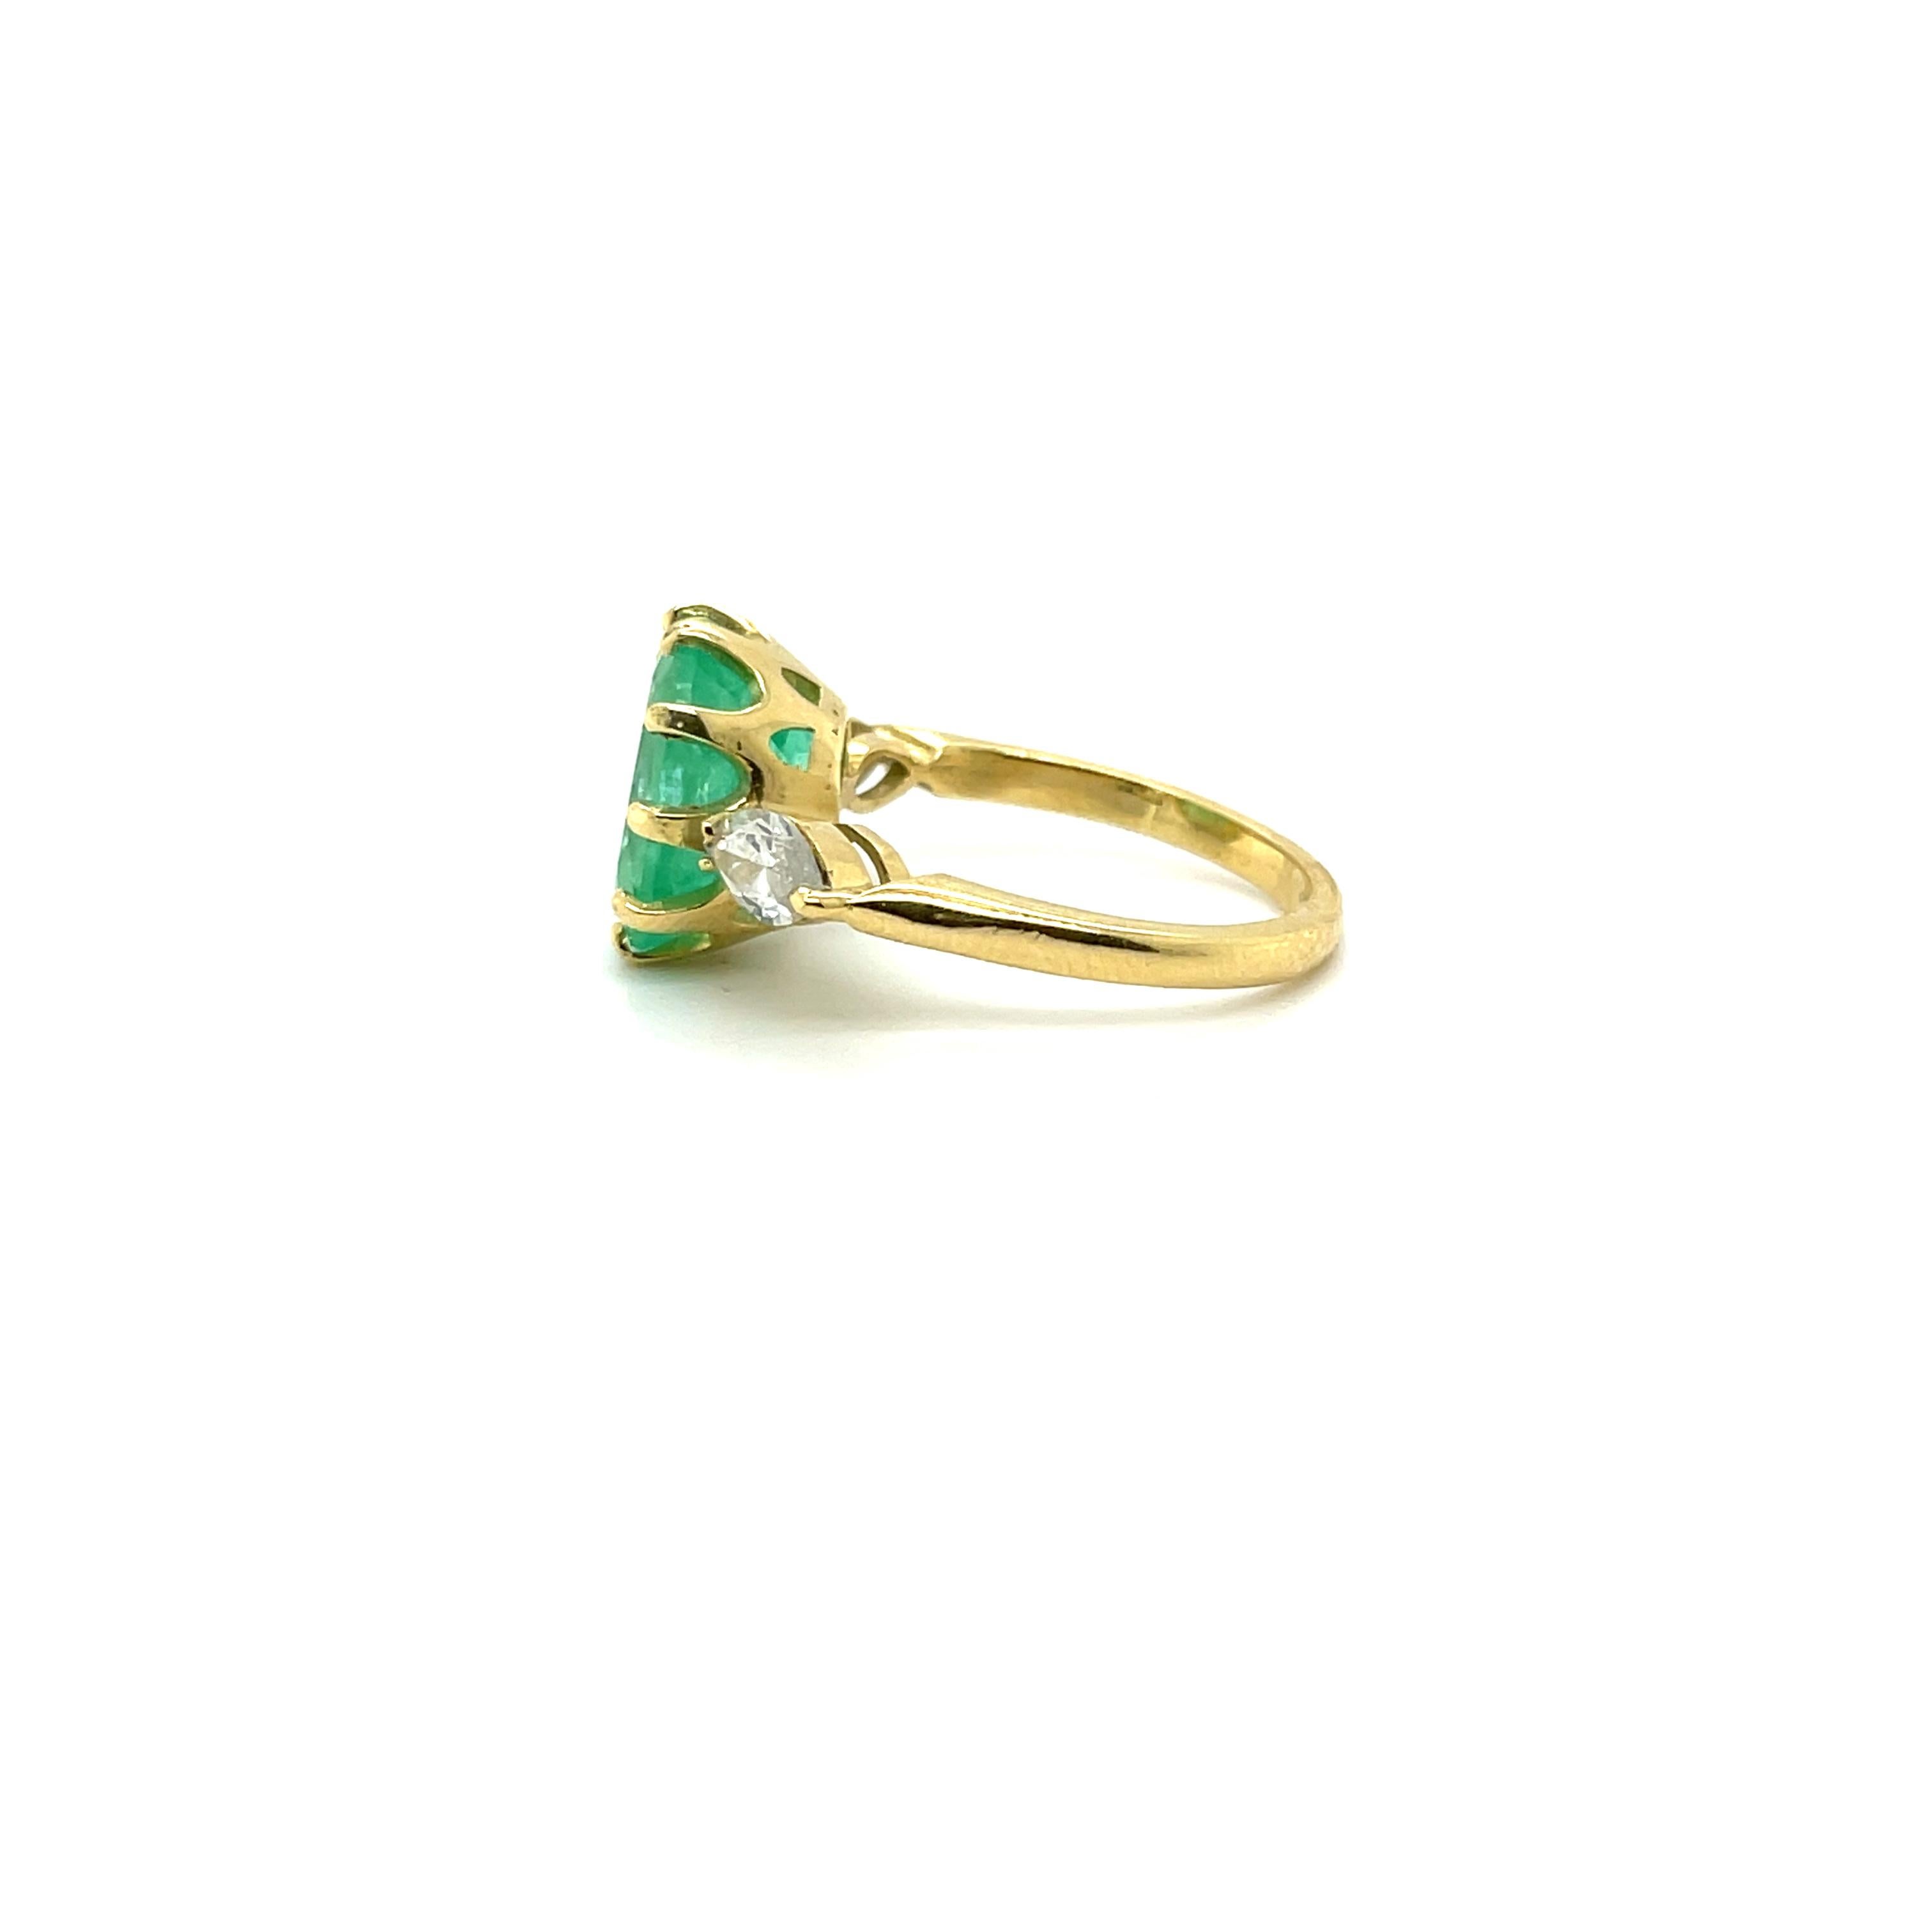 Wunderschöner Trilogie-Ring mit Smaragd und Diamant aus achtzehn Karat Gelbgold, ergänzt durch ein wunderschönes Design mit polierter Oberfläche. 


Ein Damen - Kleiderring aus 18 kt Gelbgold, schmaler, halbrunder Schaft mit Unterschiene,